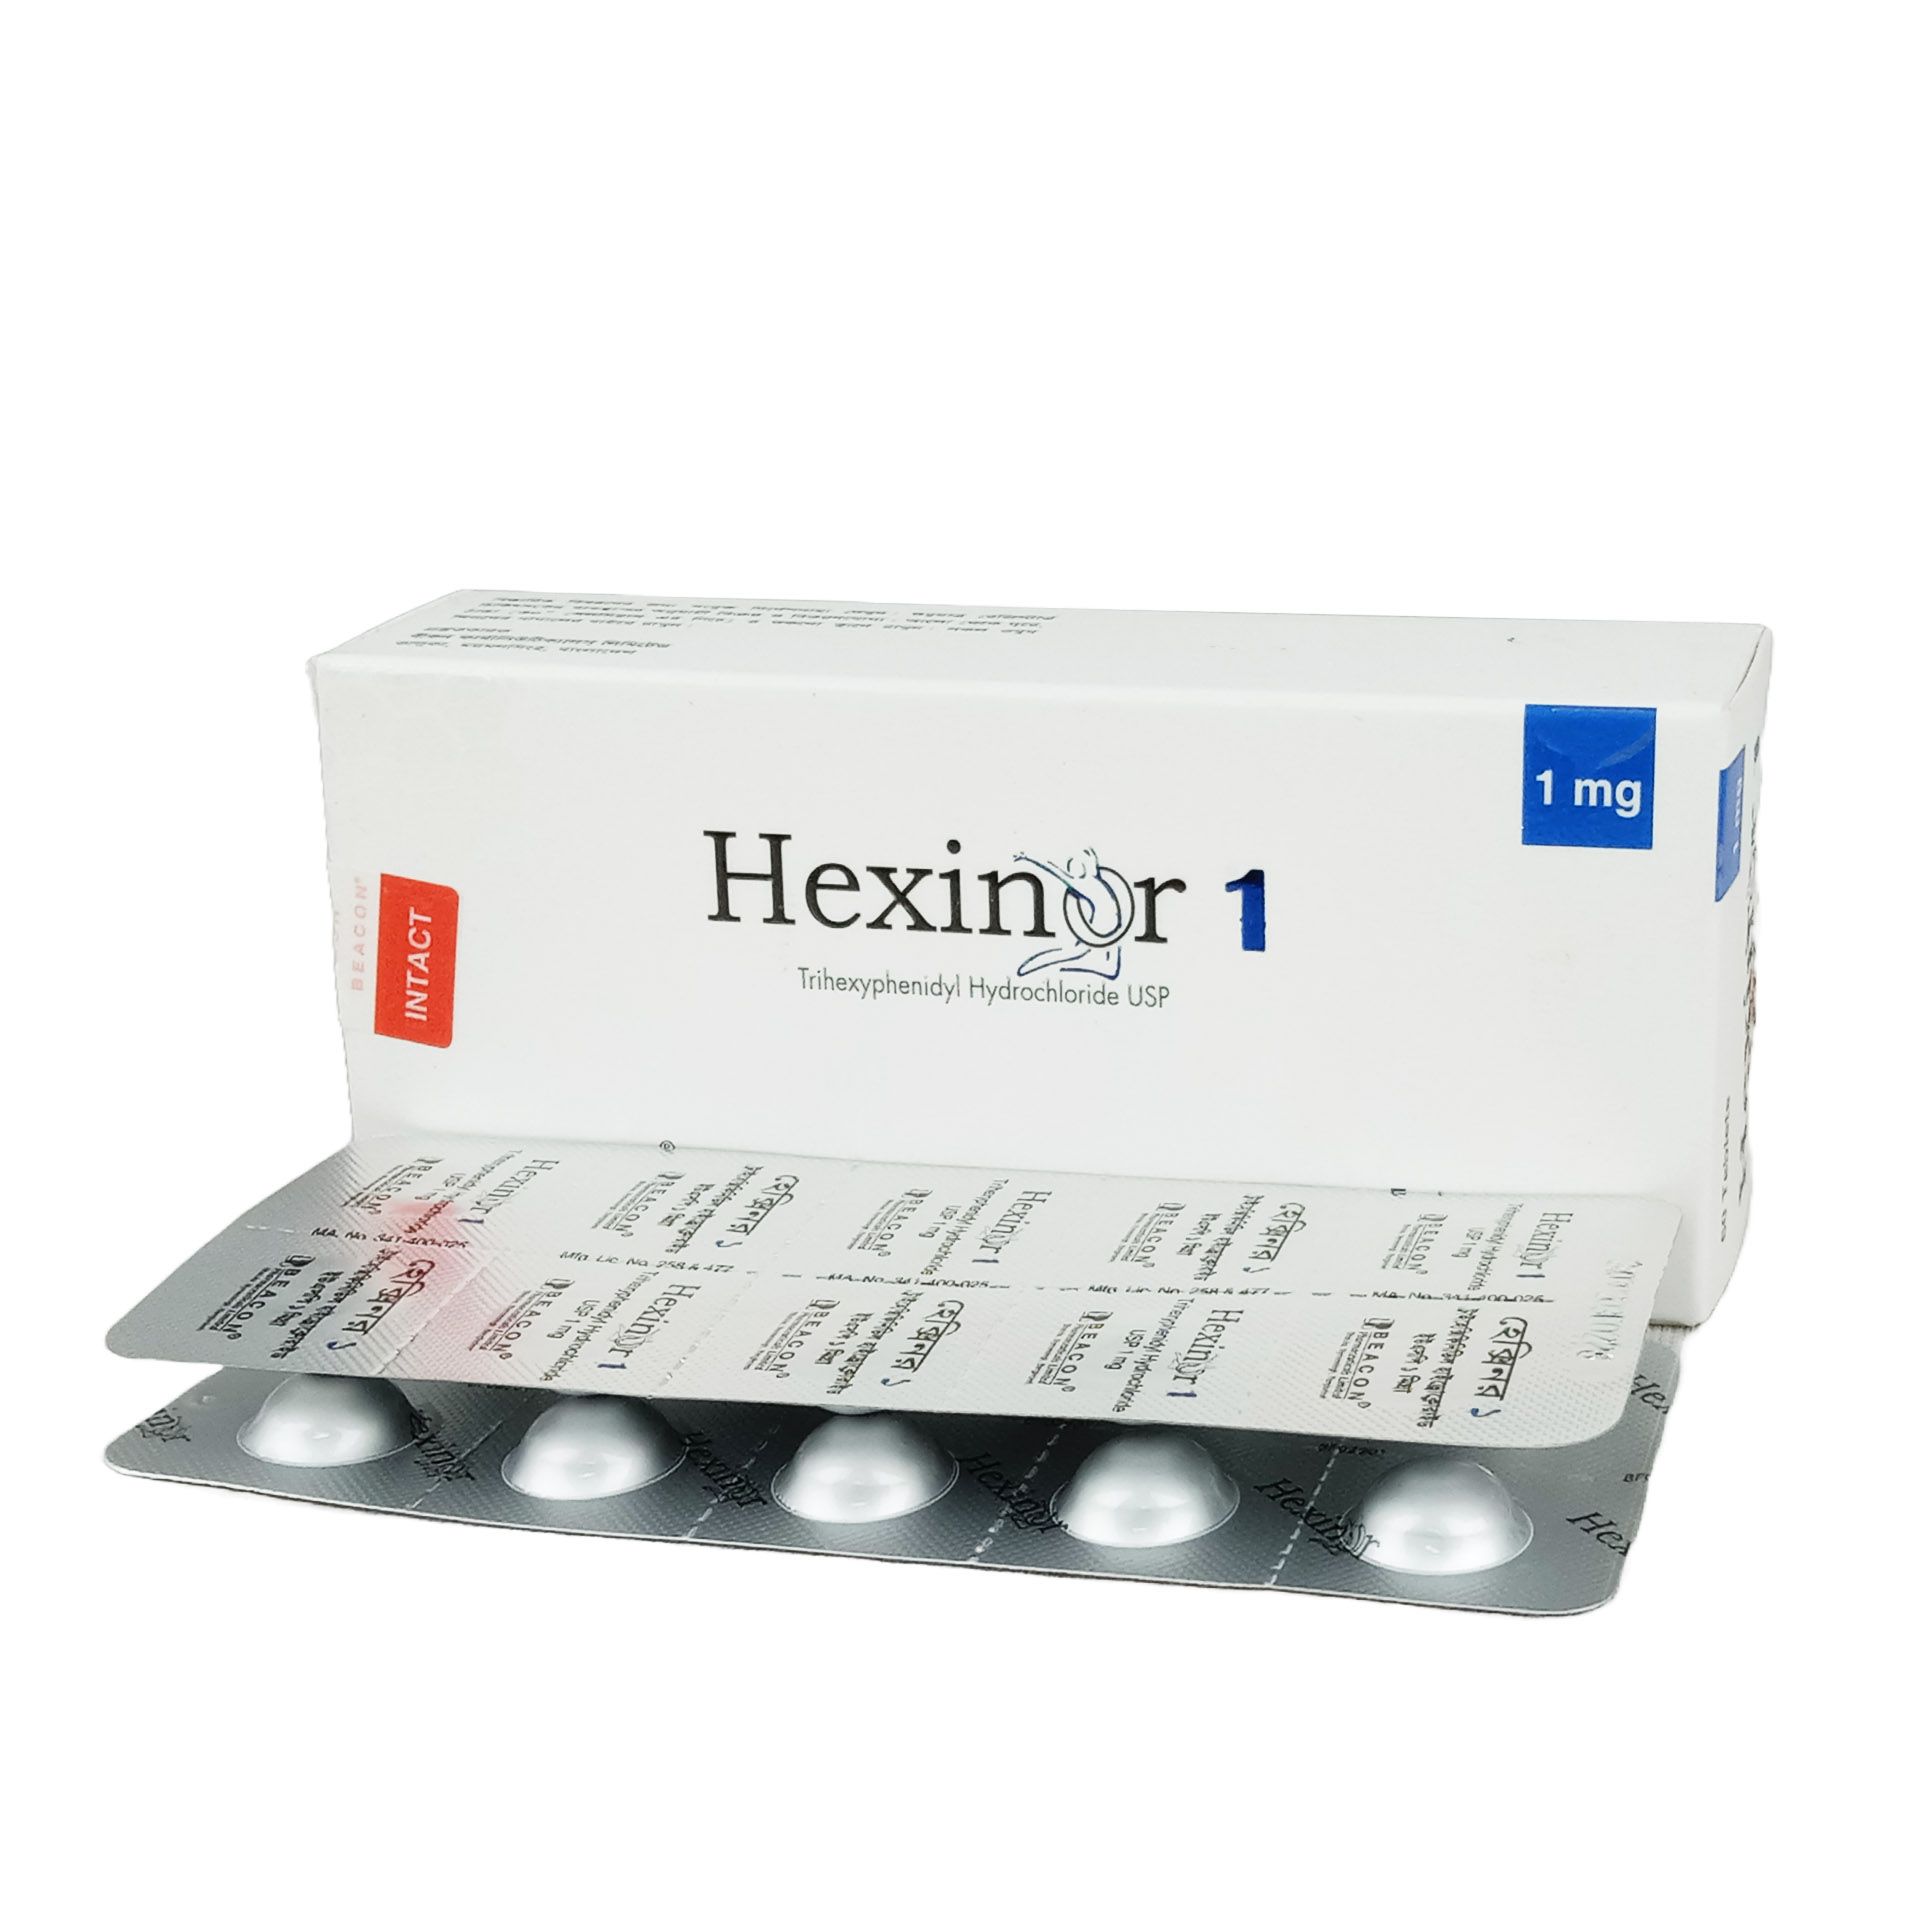 Hexinor 1mg Tablet